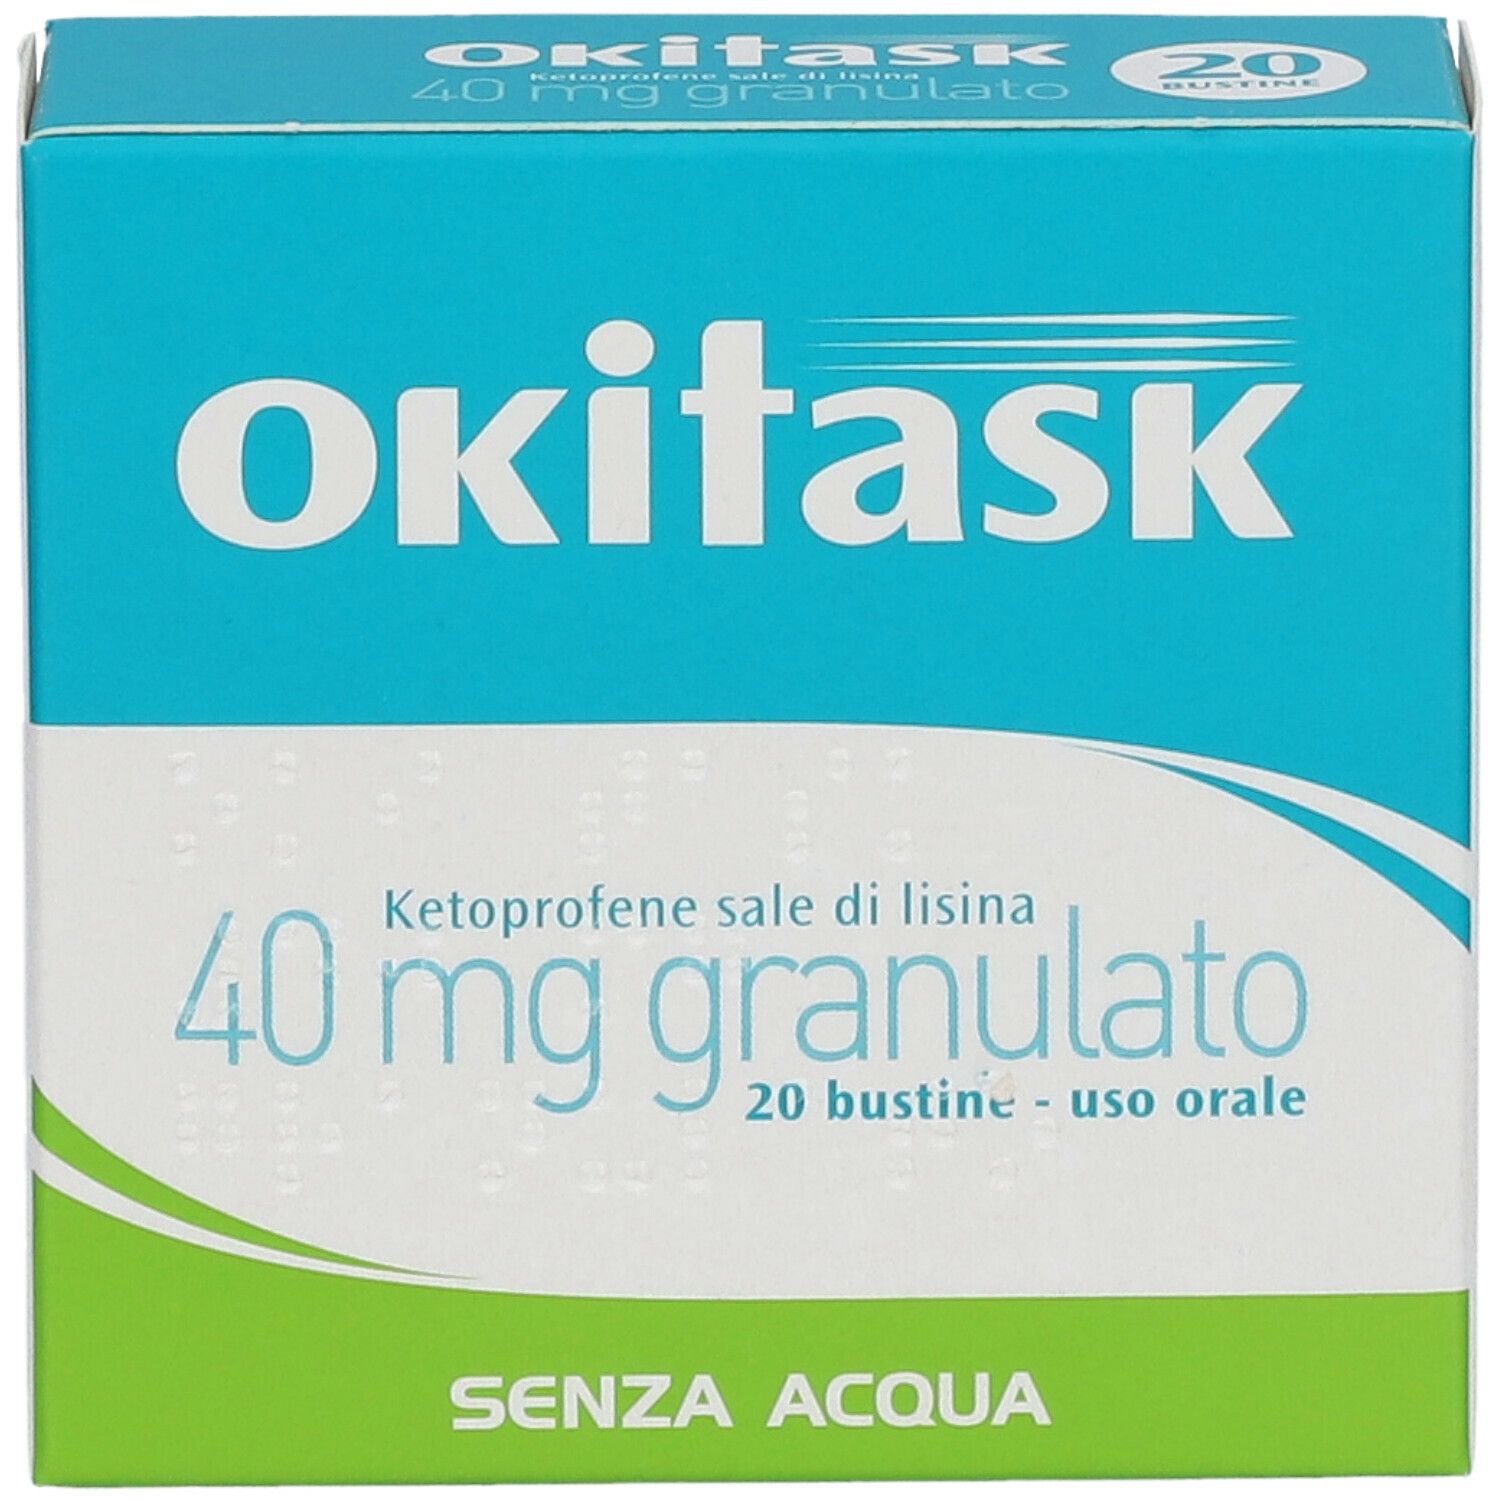 OKITASK® Granulato